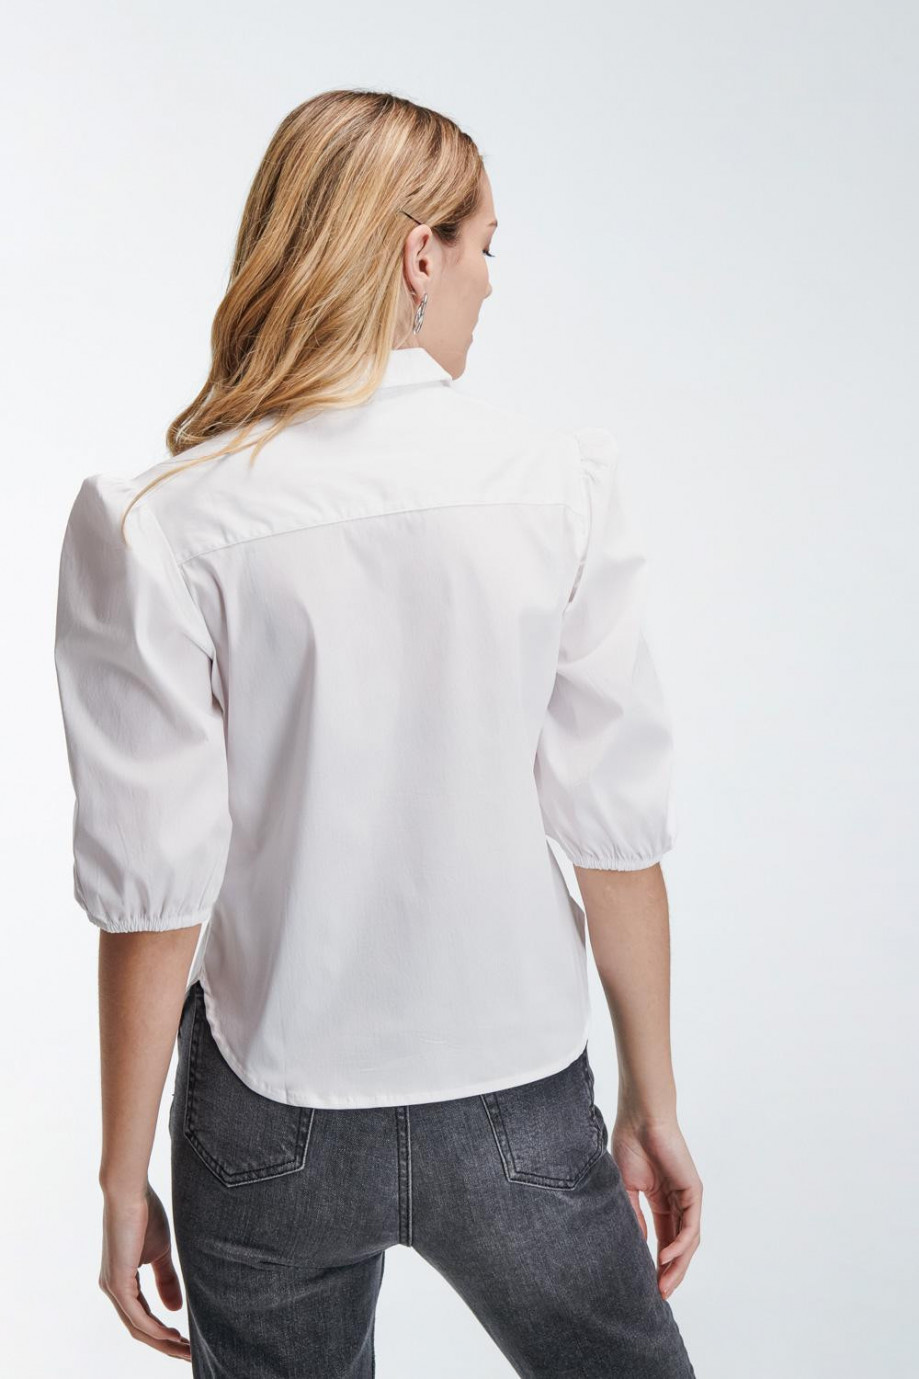 Blusa manga 3/4 blanca con cuello camisero